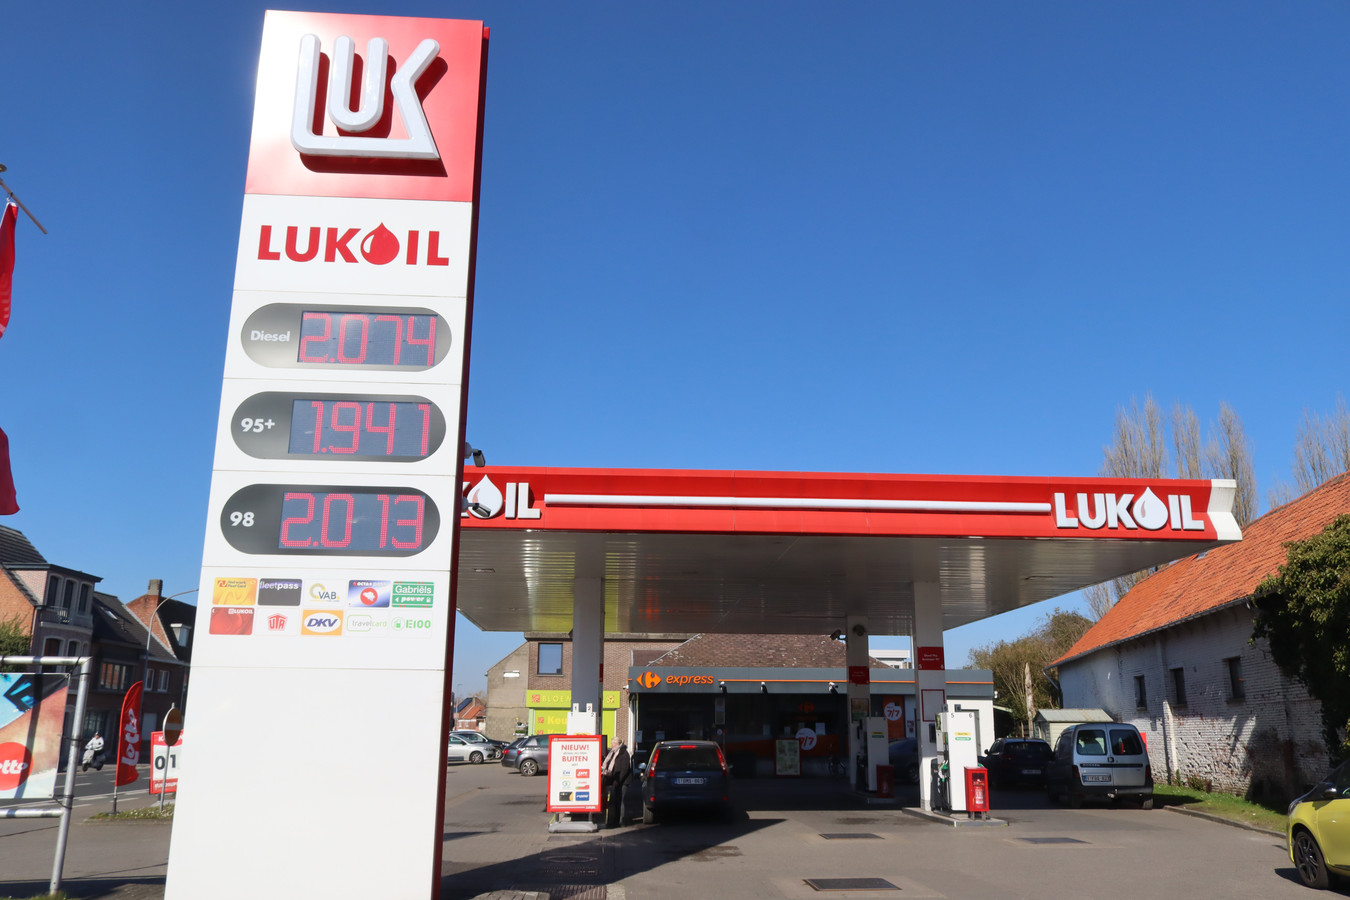 vijand Terugroepen essence Goedkoopste tankstation van het land” in Sint-Niklaas verslagen door... het  Russische Lukoil | Foto | hln.be